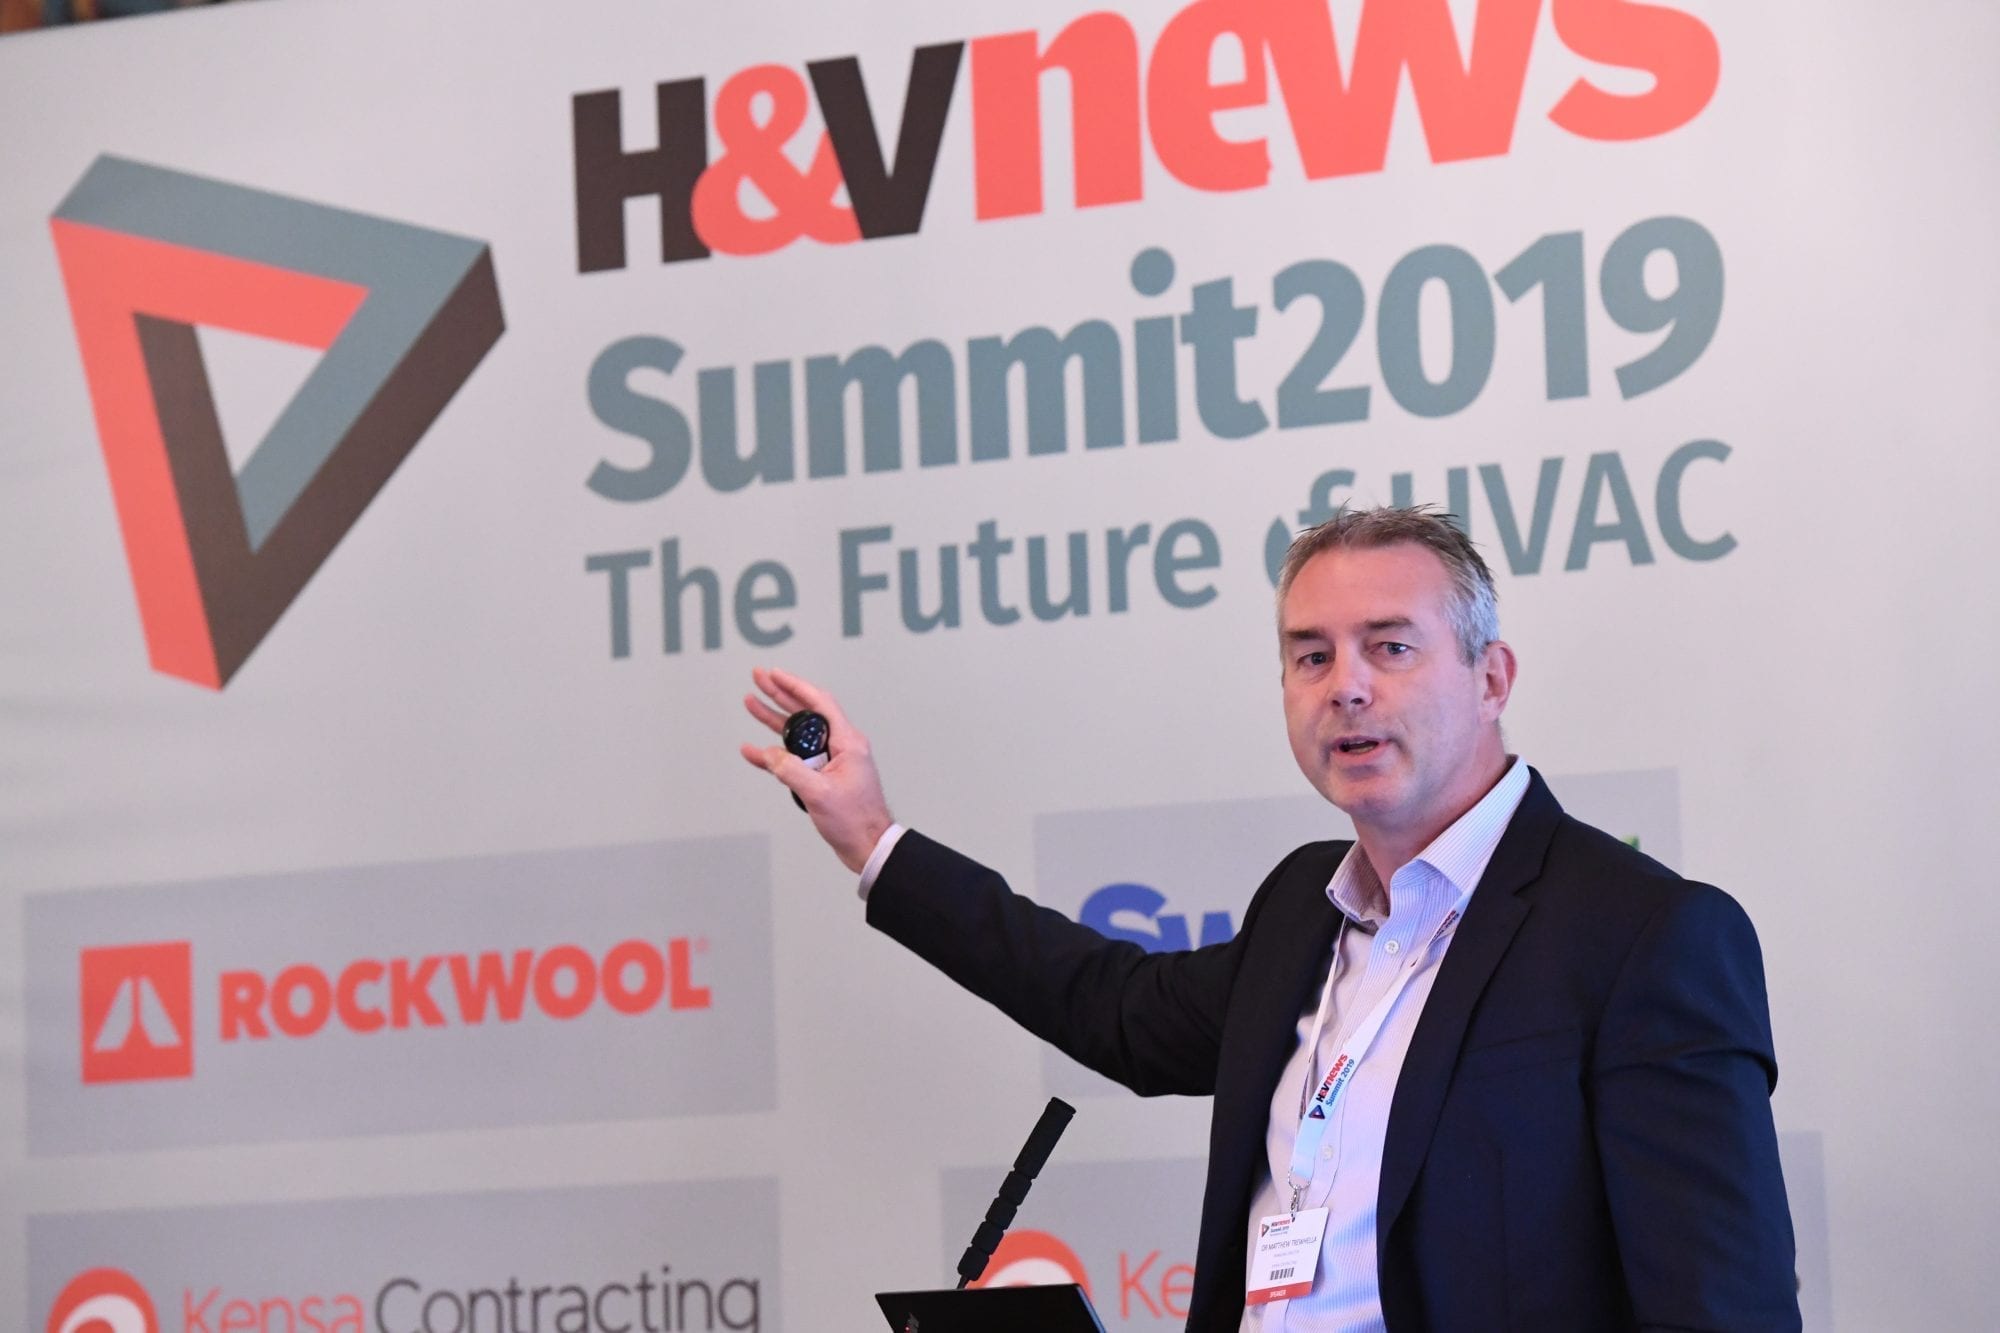 H&V News Summit - Future of HVAC | Matt Trewhella Pic 2